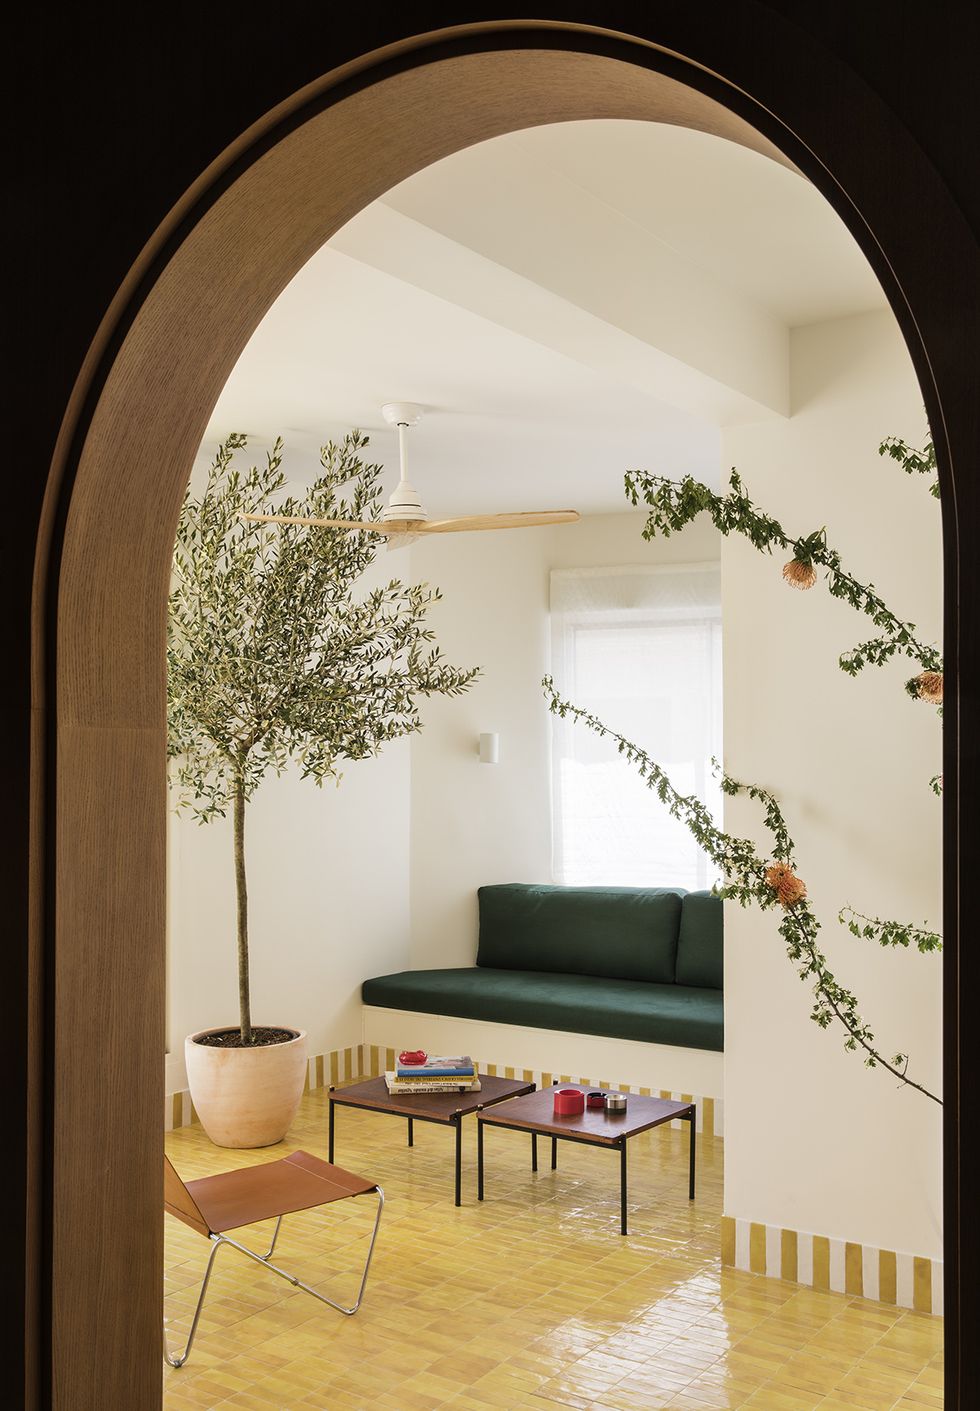 Maxi trilocale: design e ispirazioni scandinave per la casa di 125 mq - Cose  di Casa